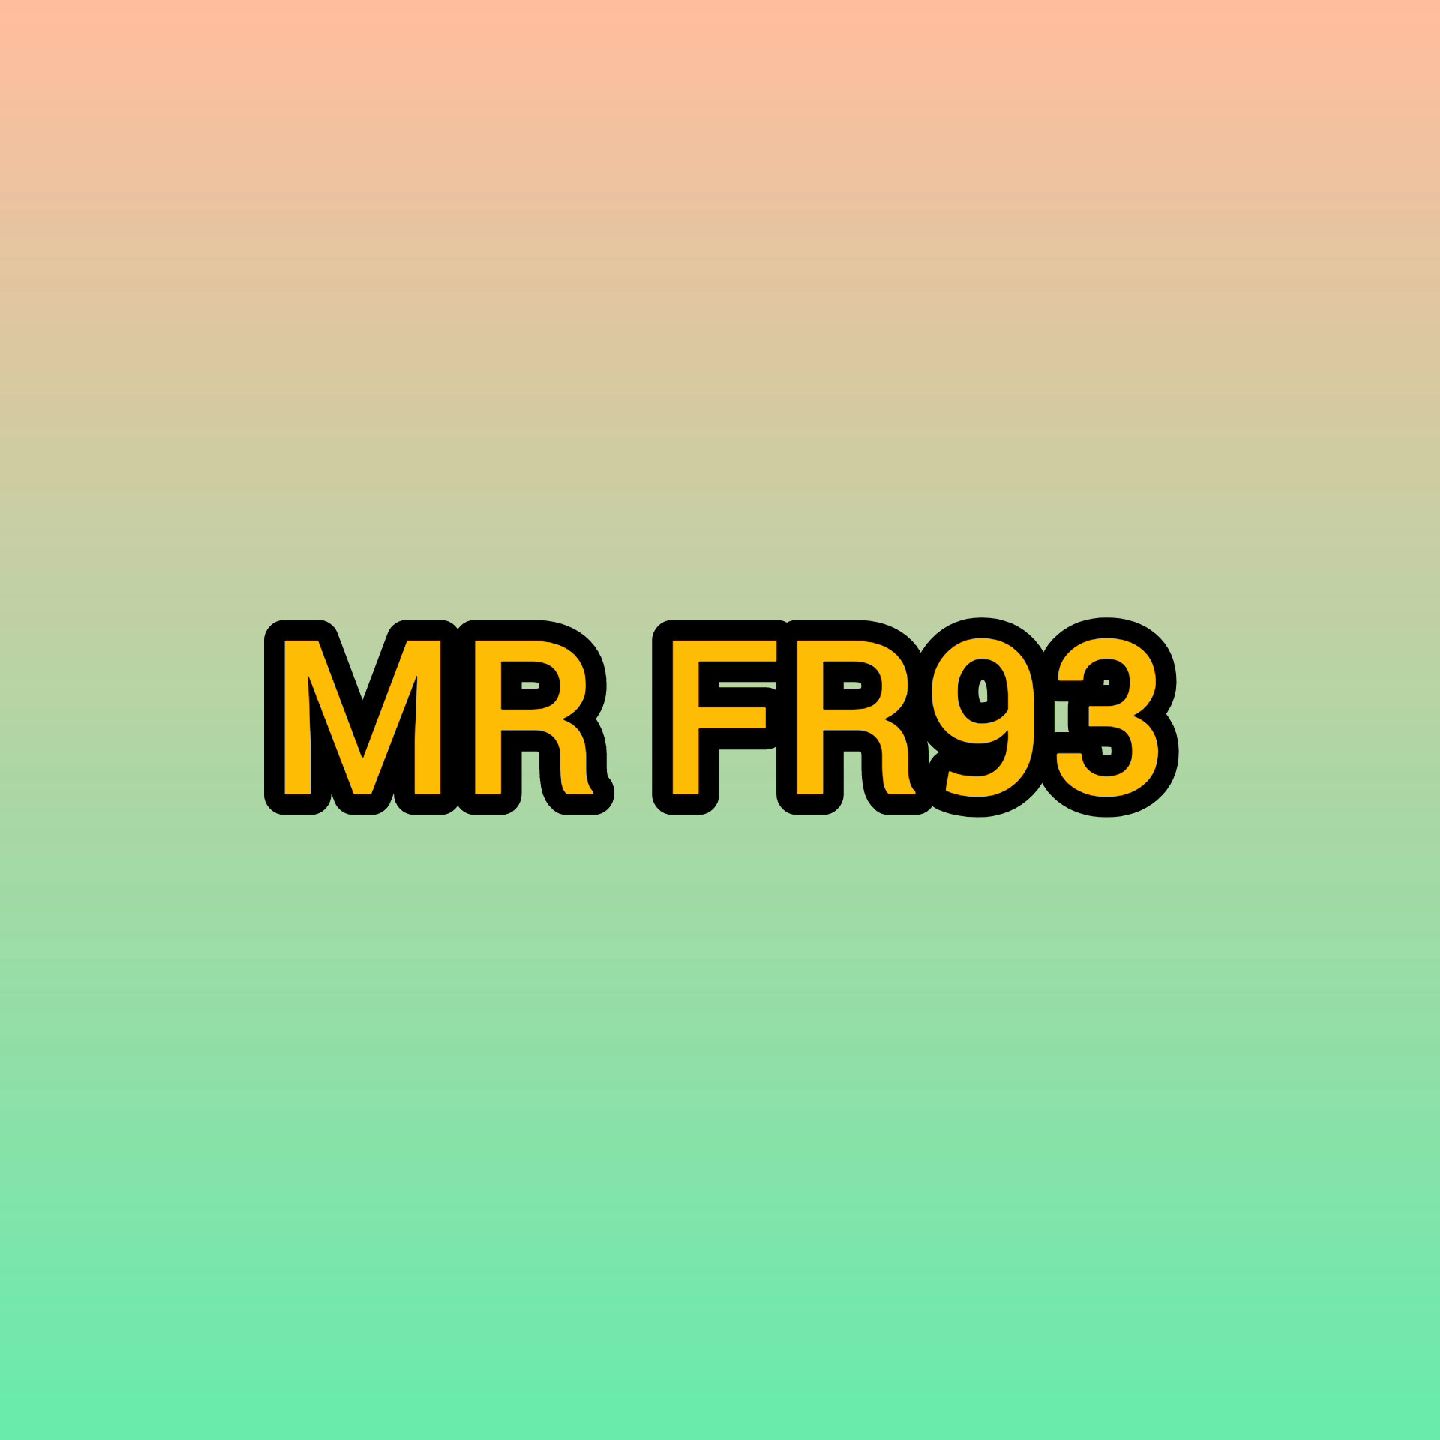 mr fr93's images